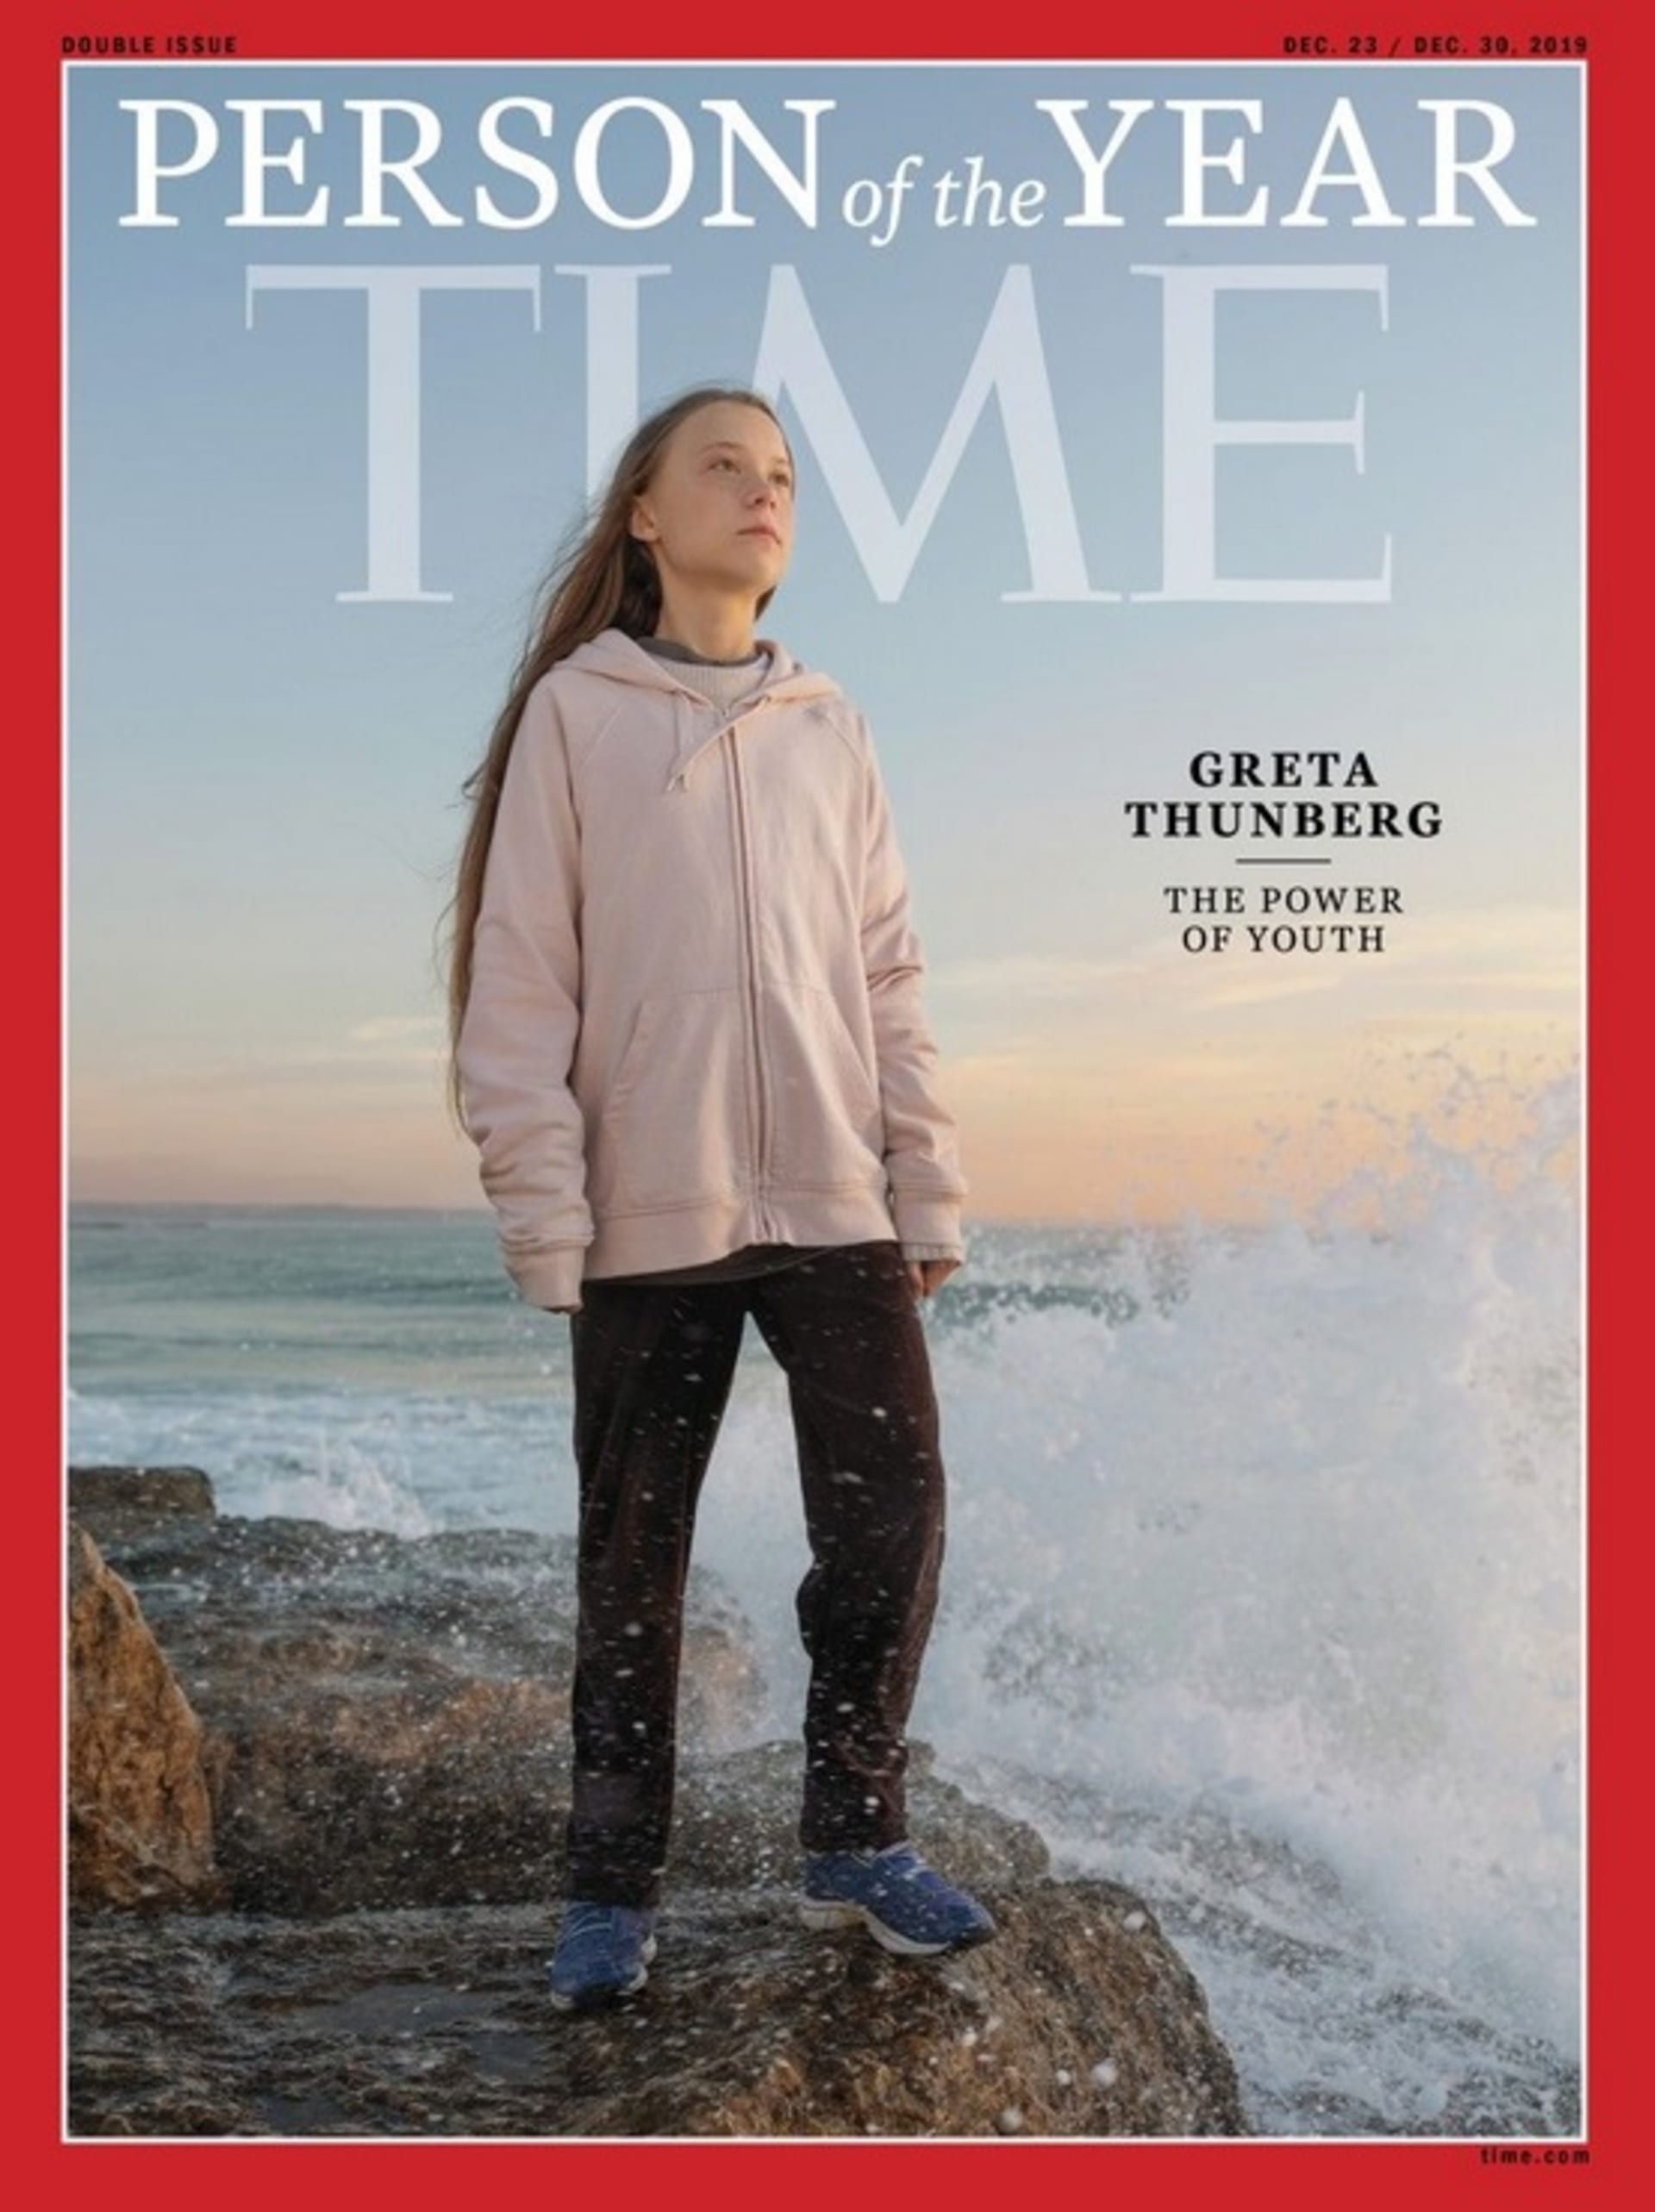 Greta Thunberg osobností roku časopisu Time